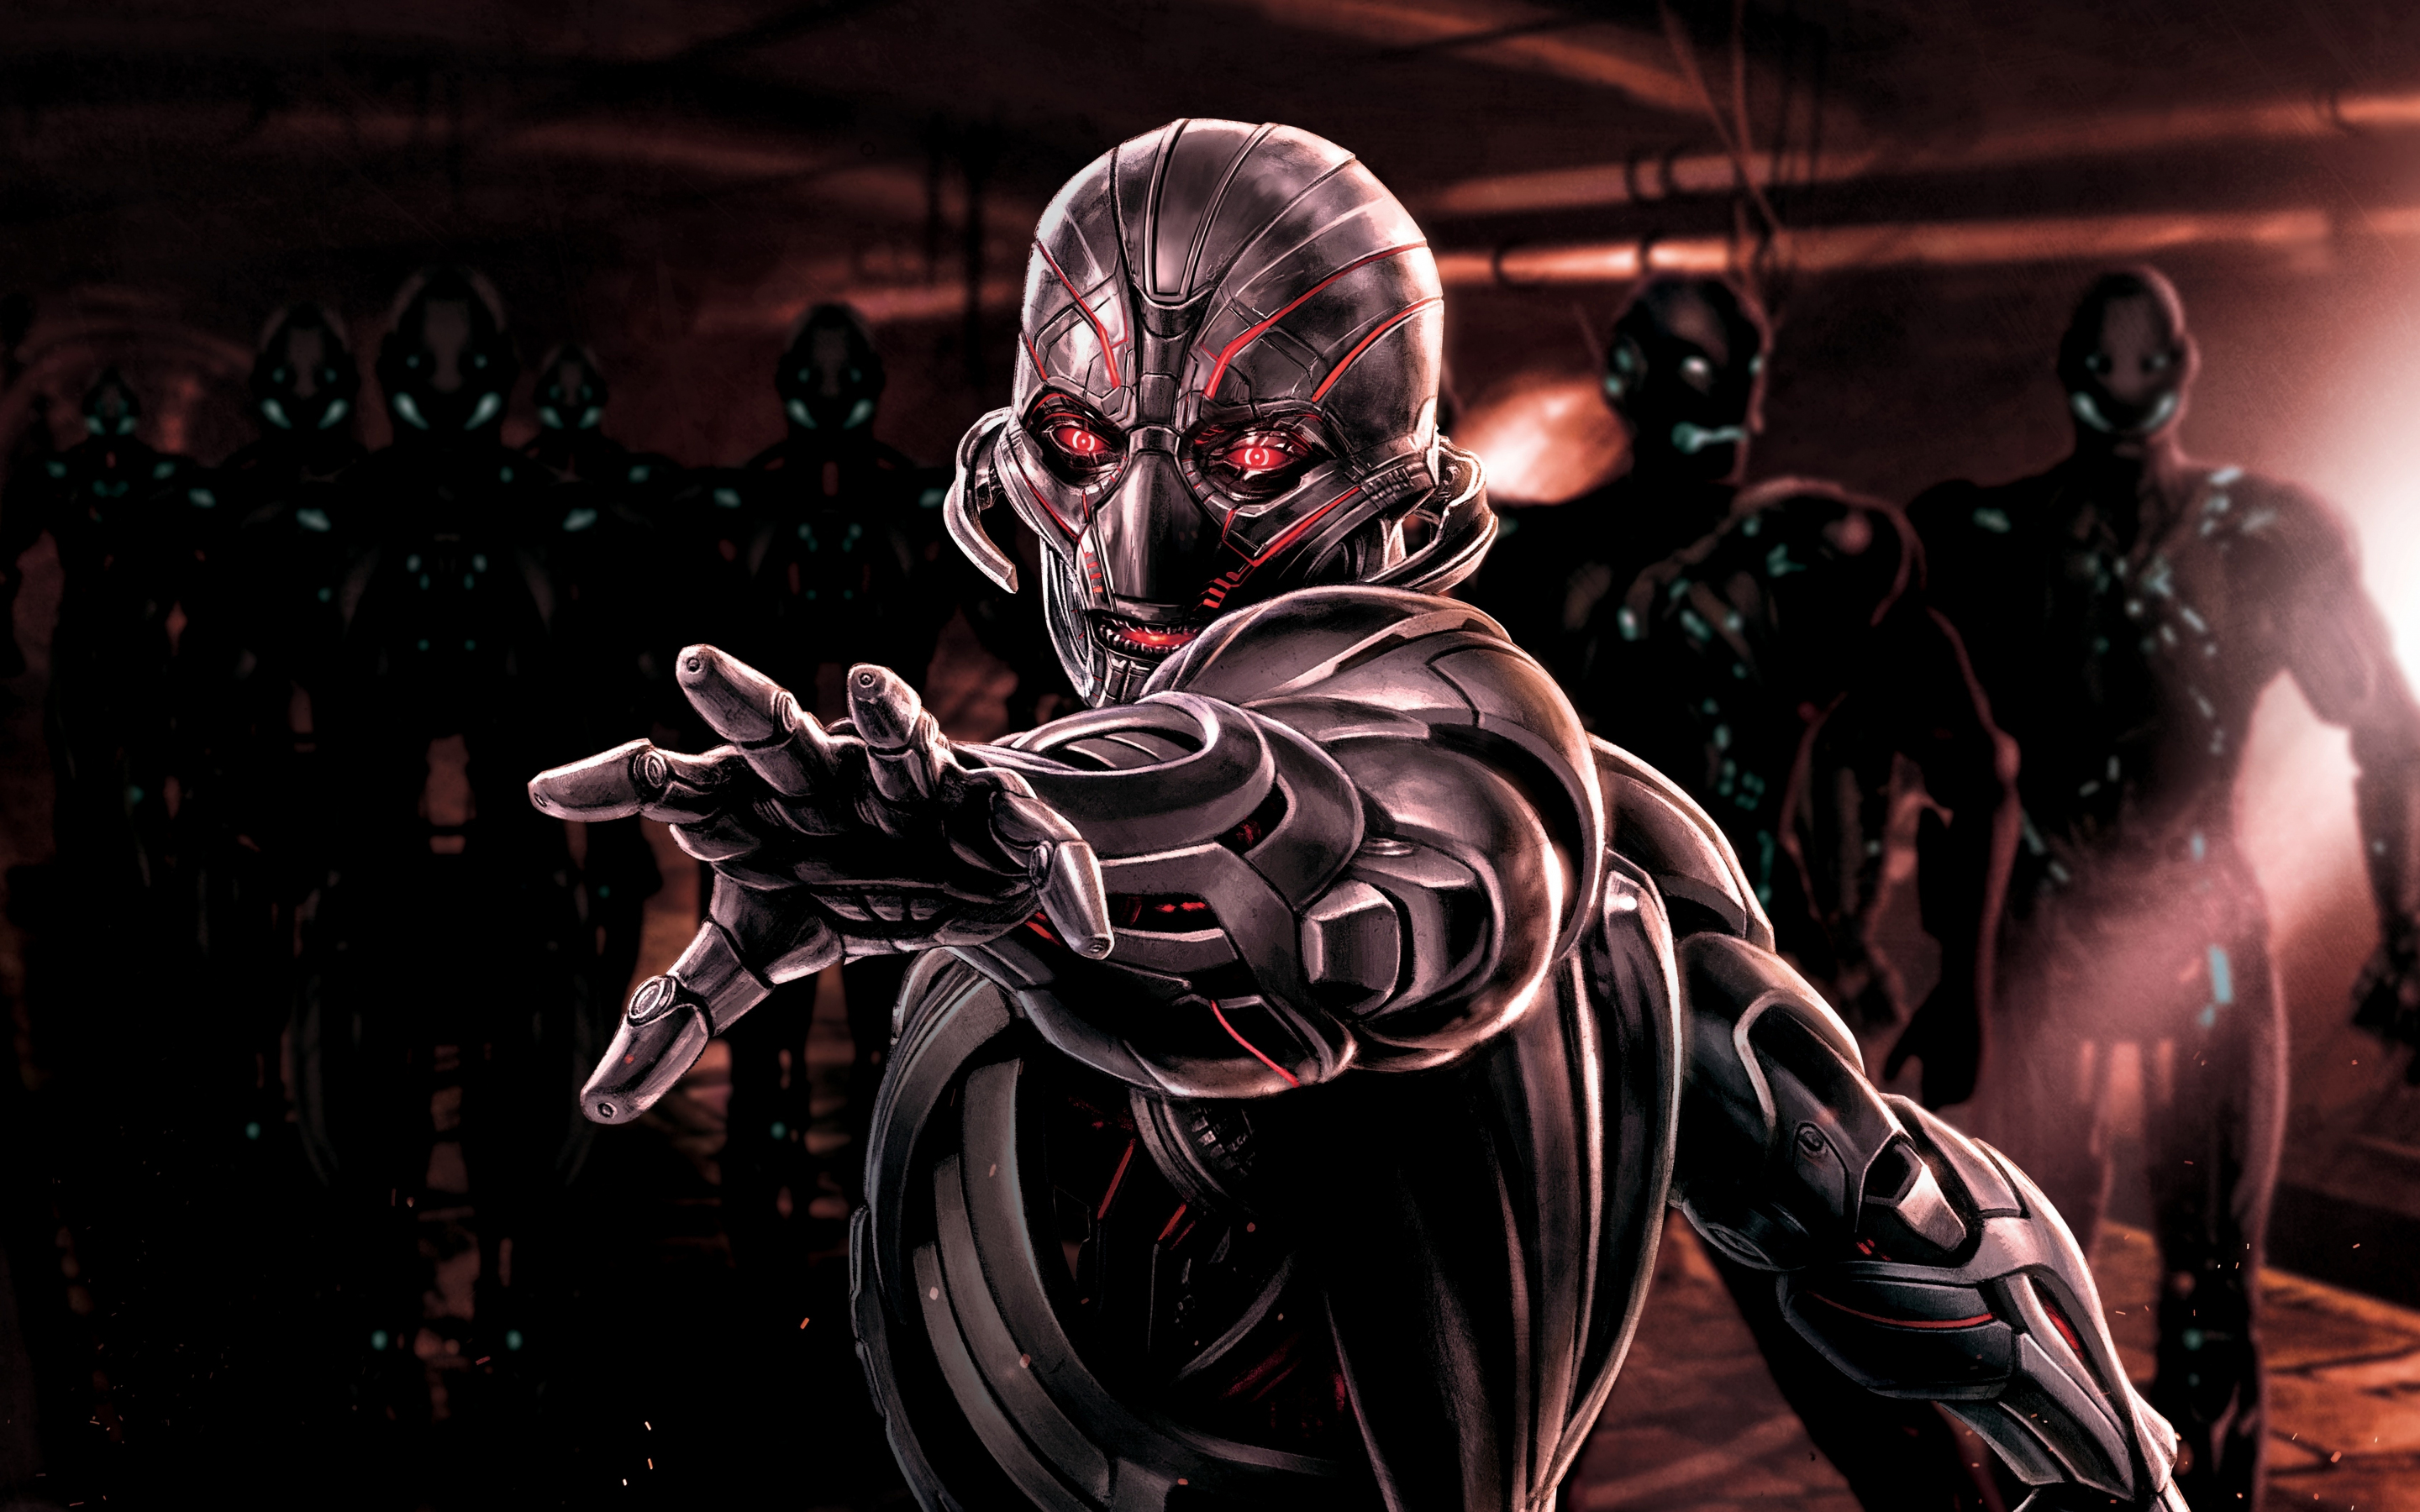 Ultron, Avengers: Age of Ultron, supervillain, robot, marvel comics, 2880x1800 wallpaper